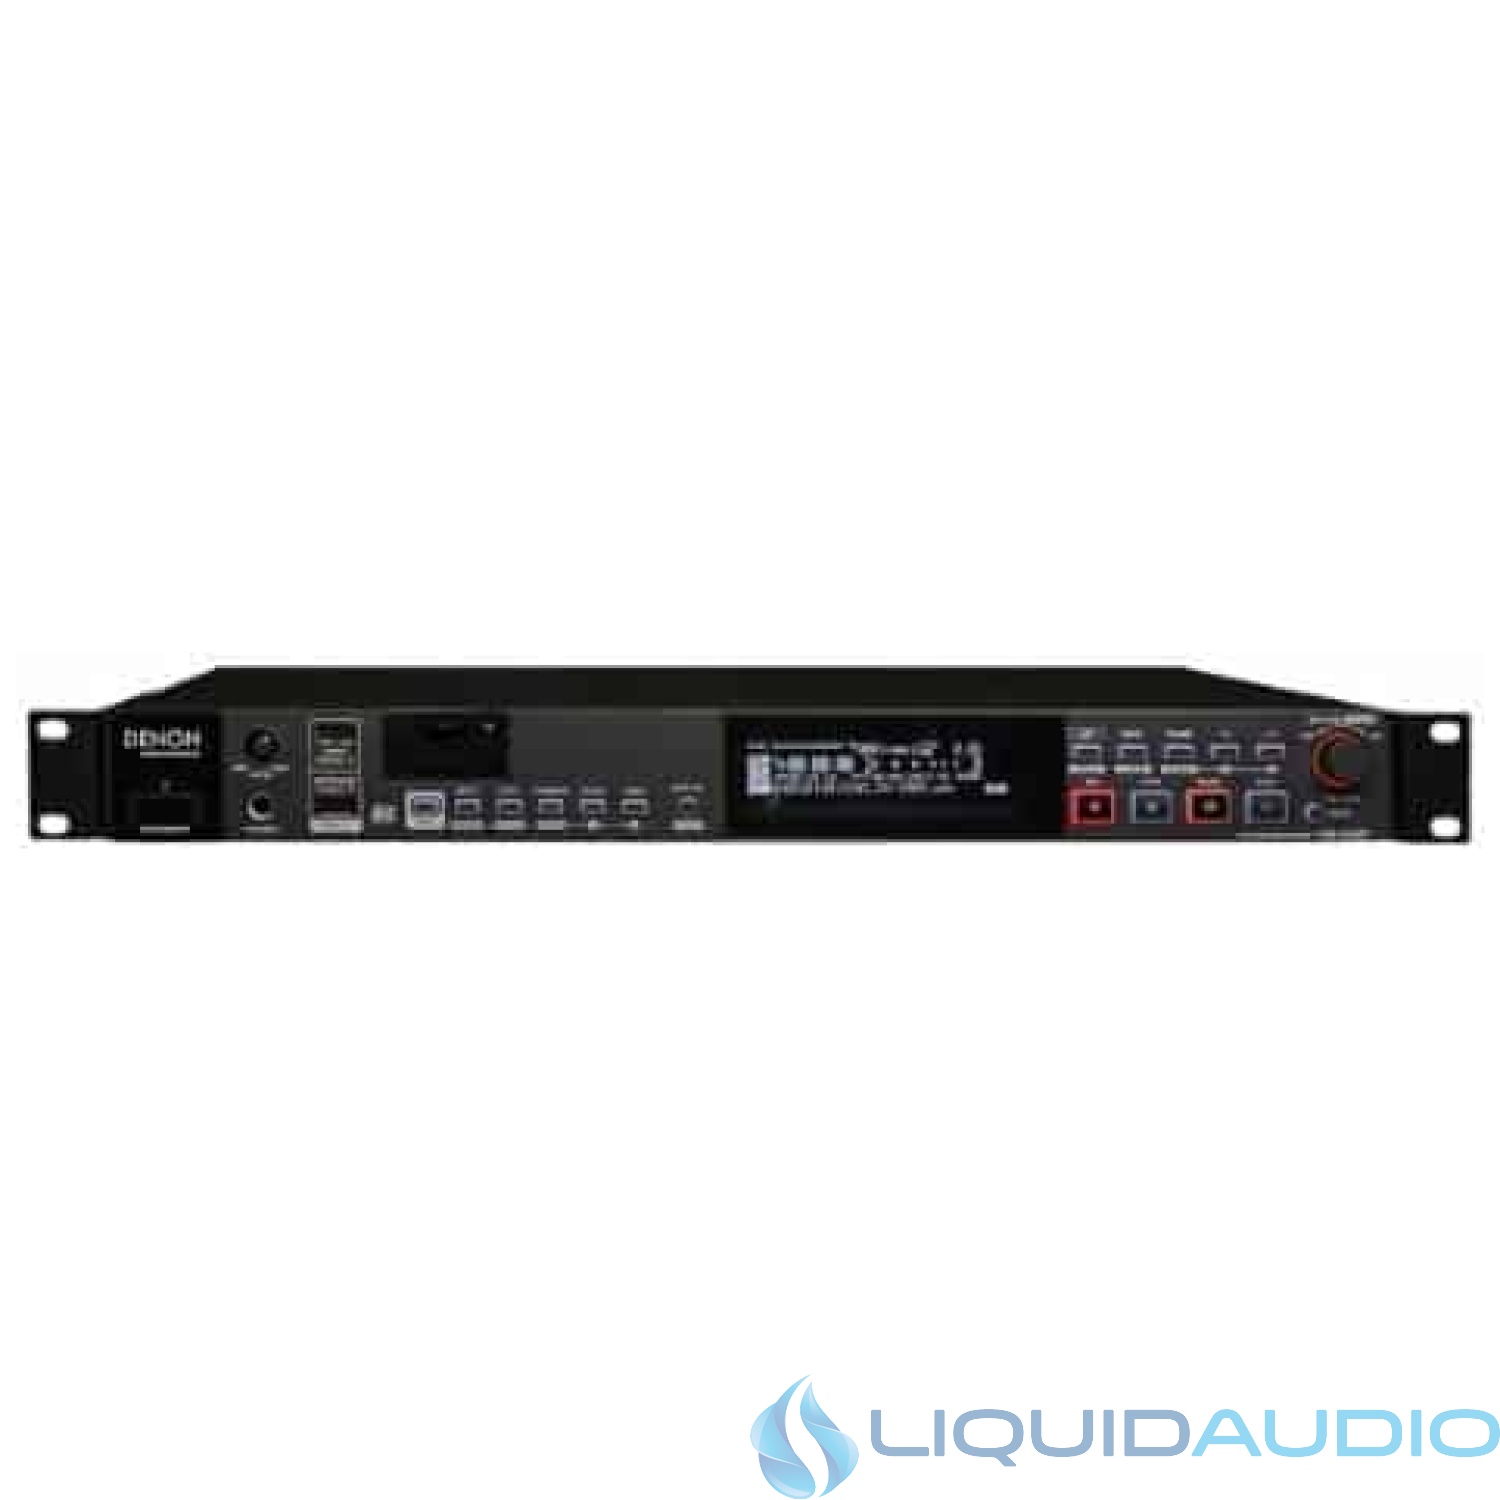 Denon Professional DN-500R SD/USB Solid State Audio Recorder